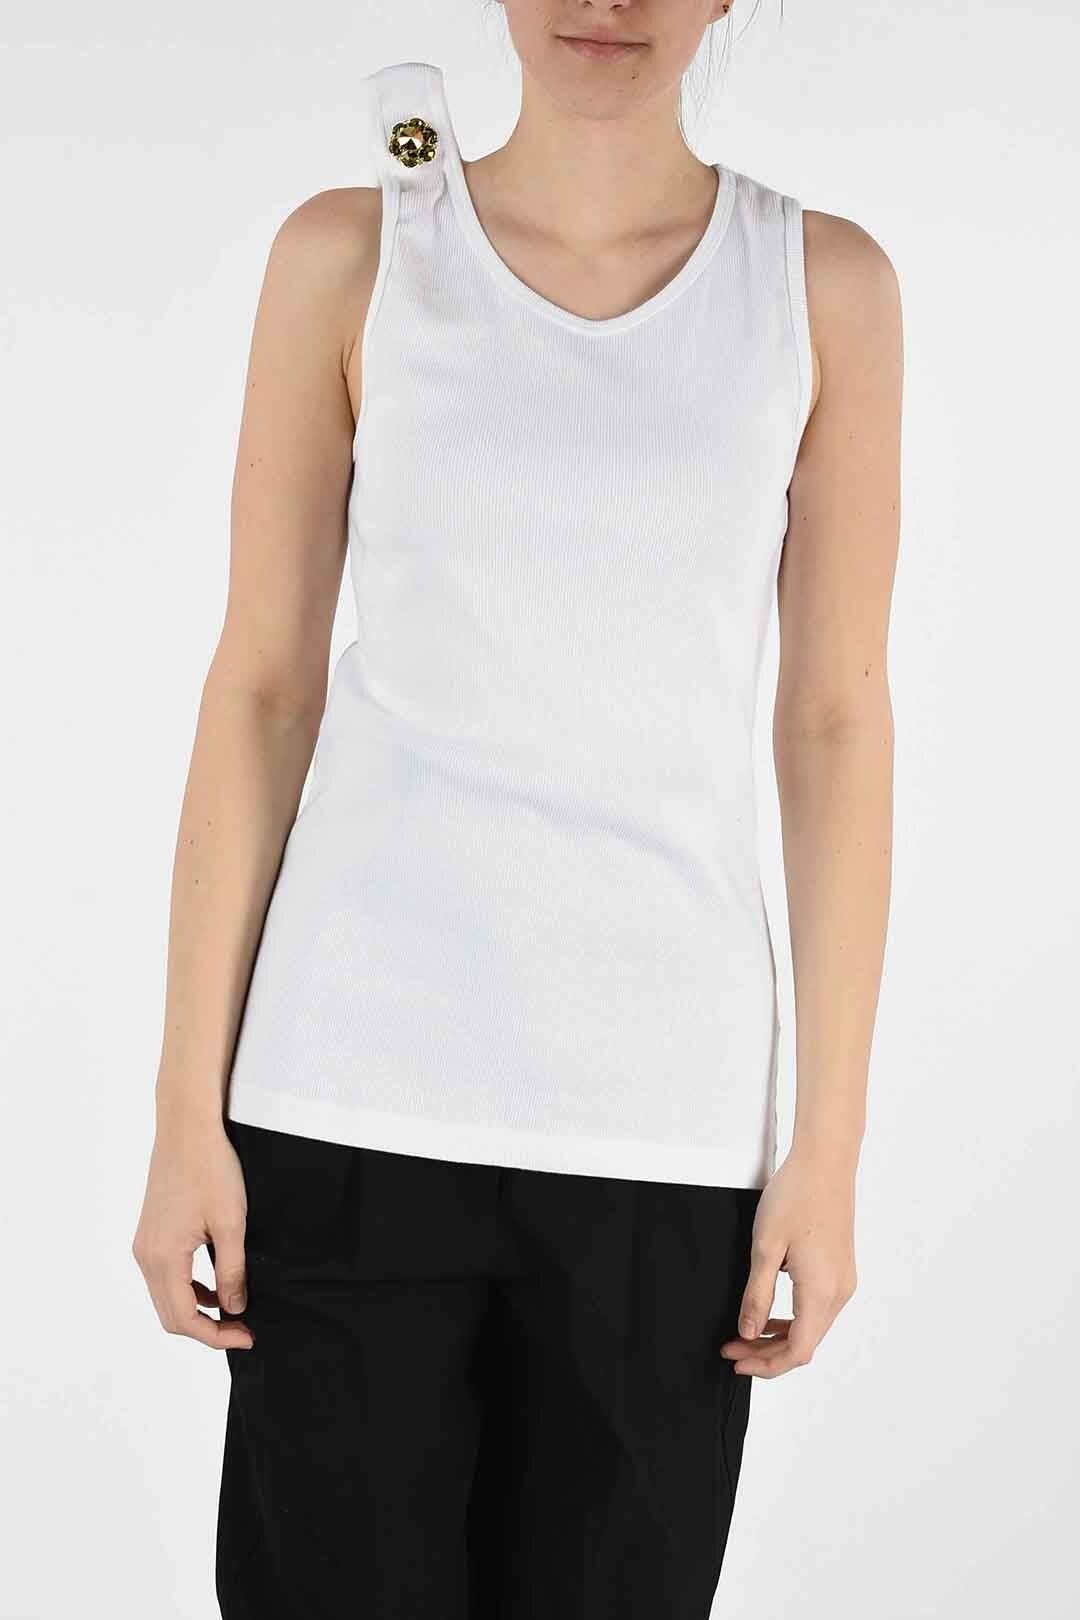 Calvin Klein Women's Dropped Armhole Tank Top White Size Small 